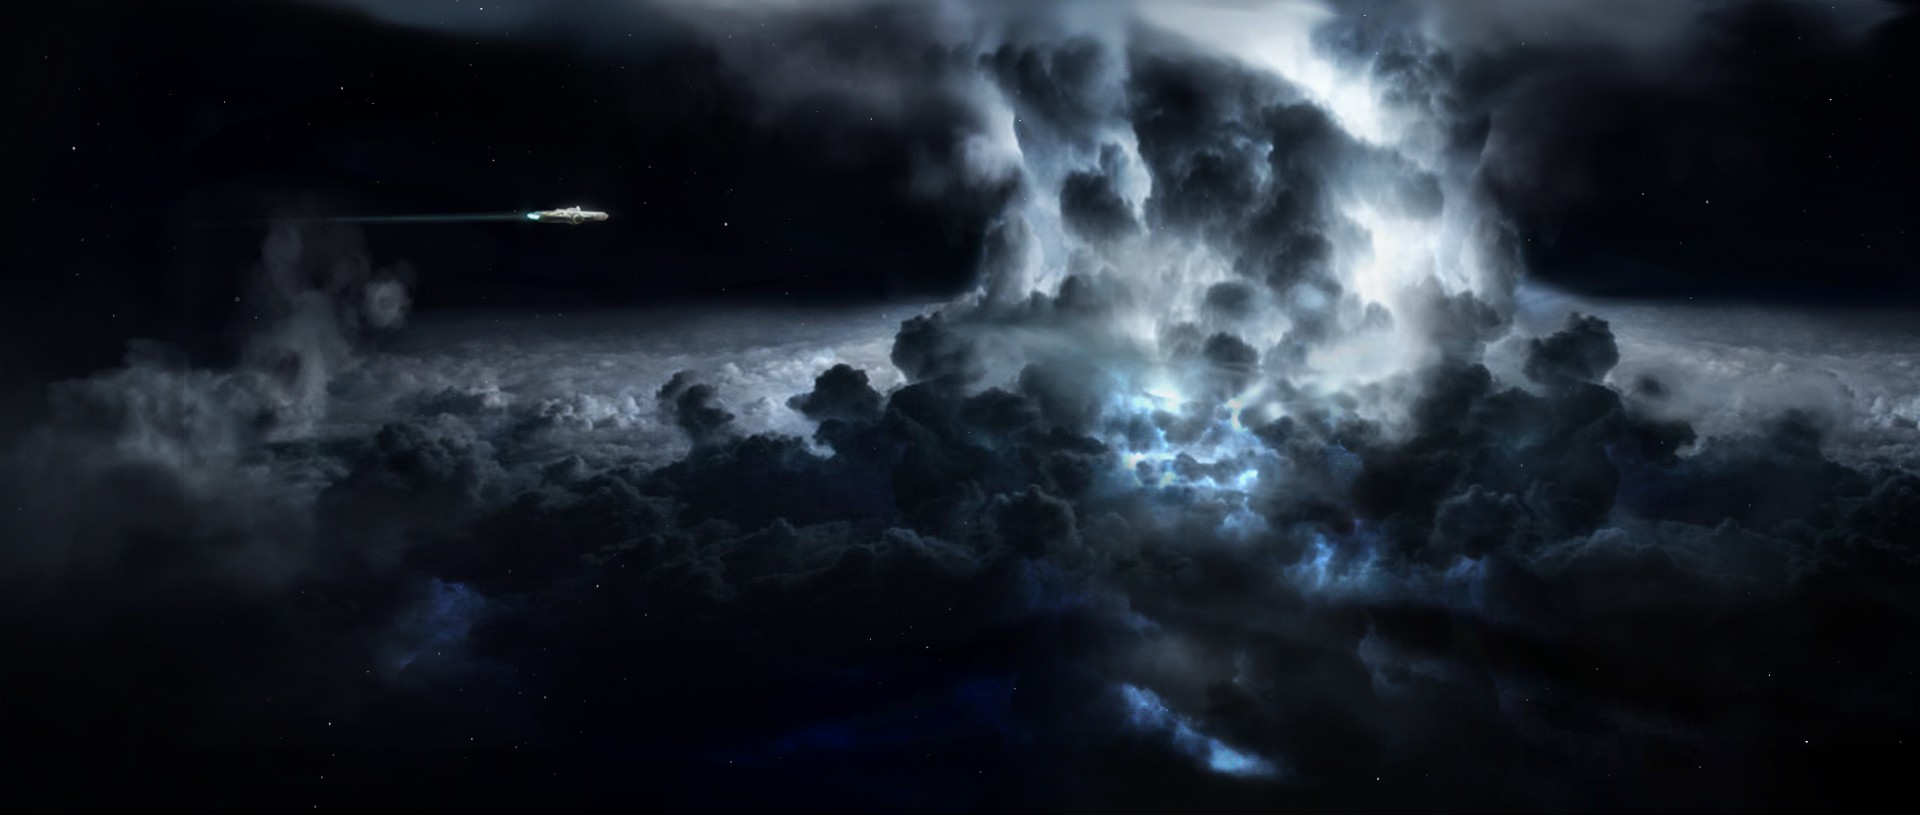 Storm in space par Berru